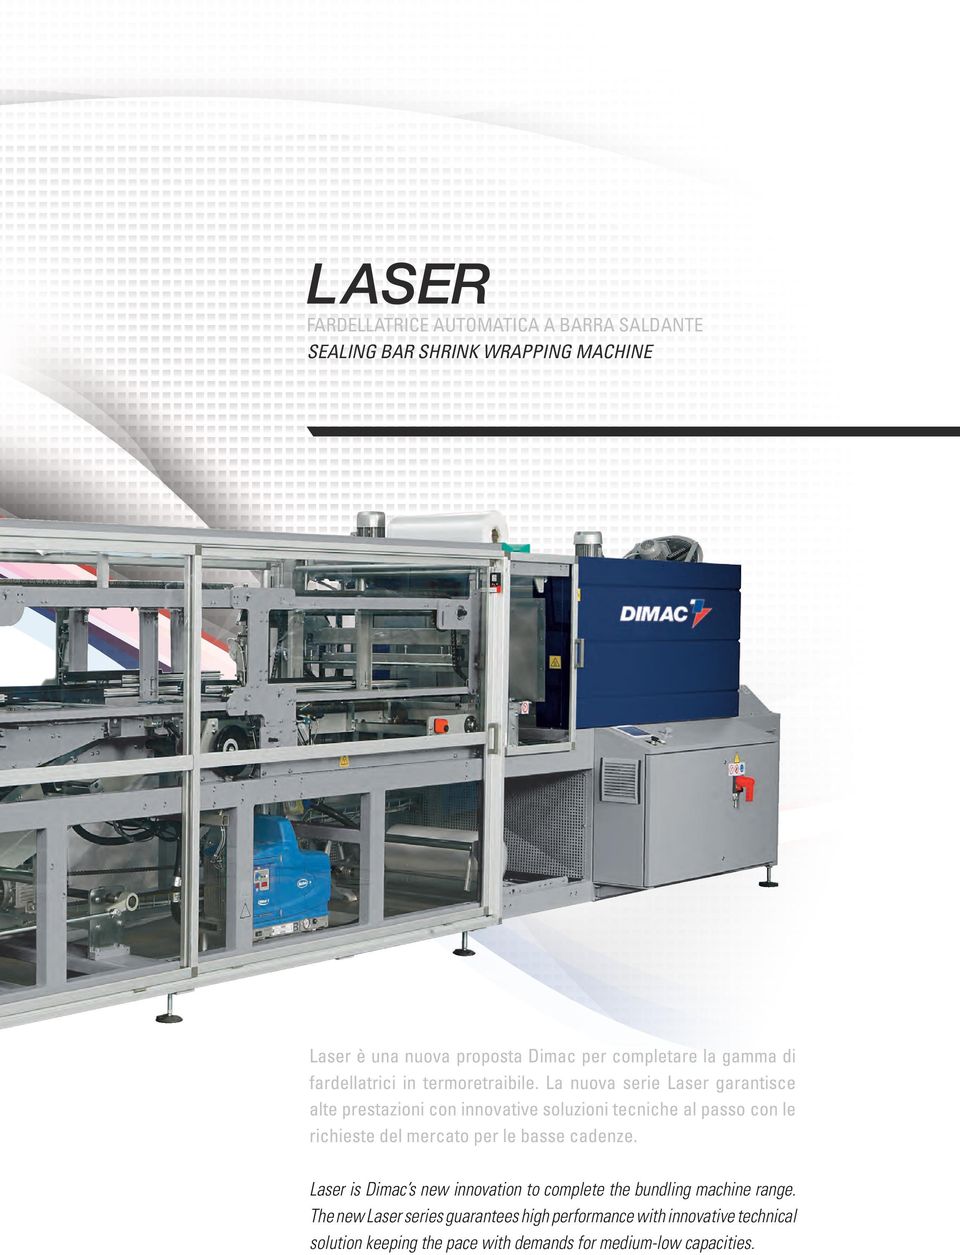 La nuova serie Laser garantisce alte prestazioni con innovative soluzioni tecniche al passo con le richieste del mercato per le basse